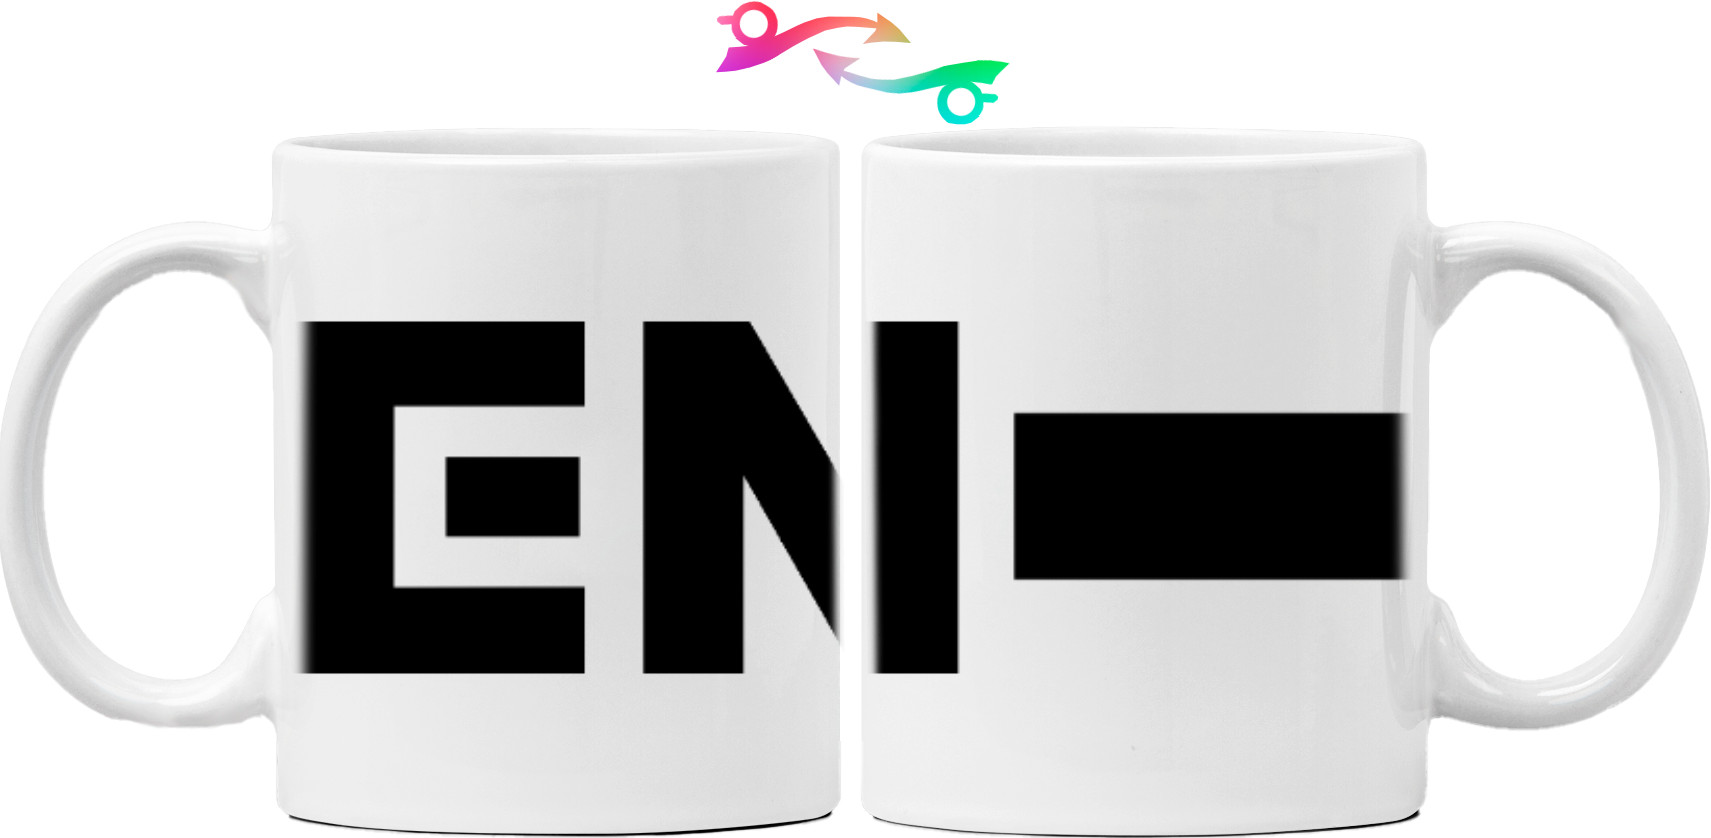 Enhypen - Mug - enhypen logo 2 - Mfest